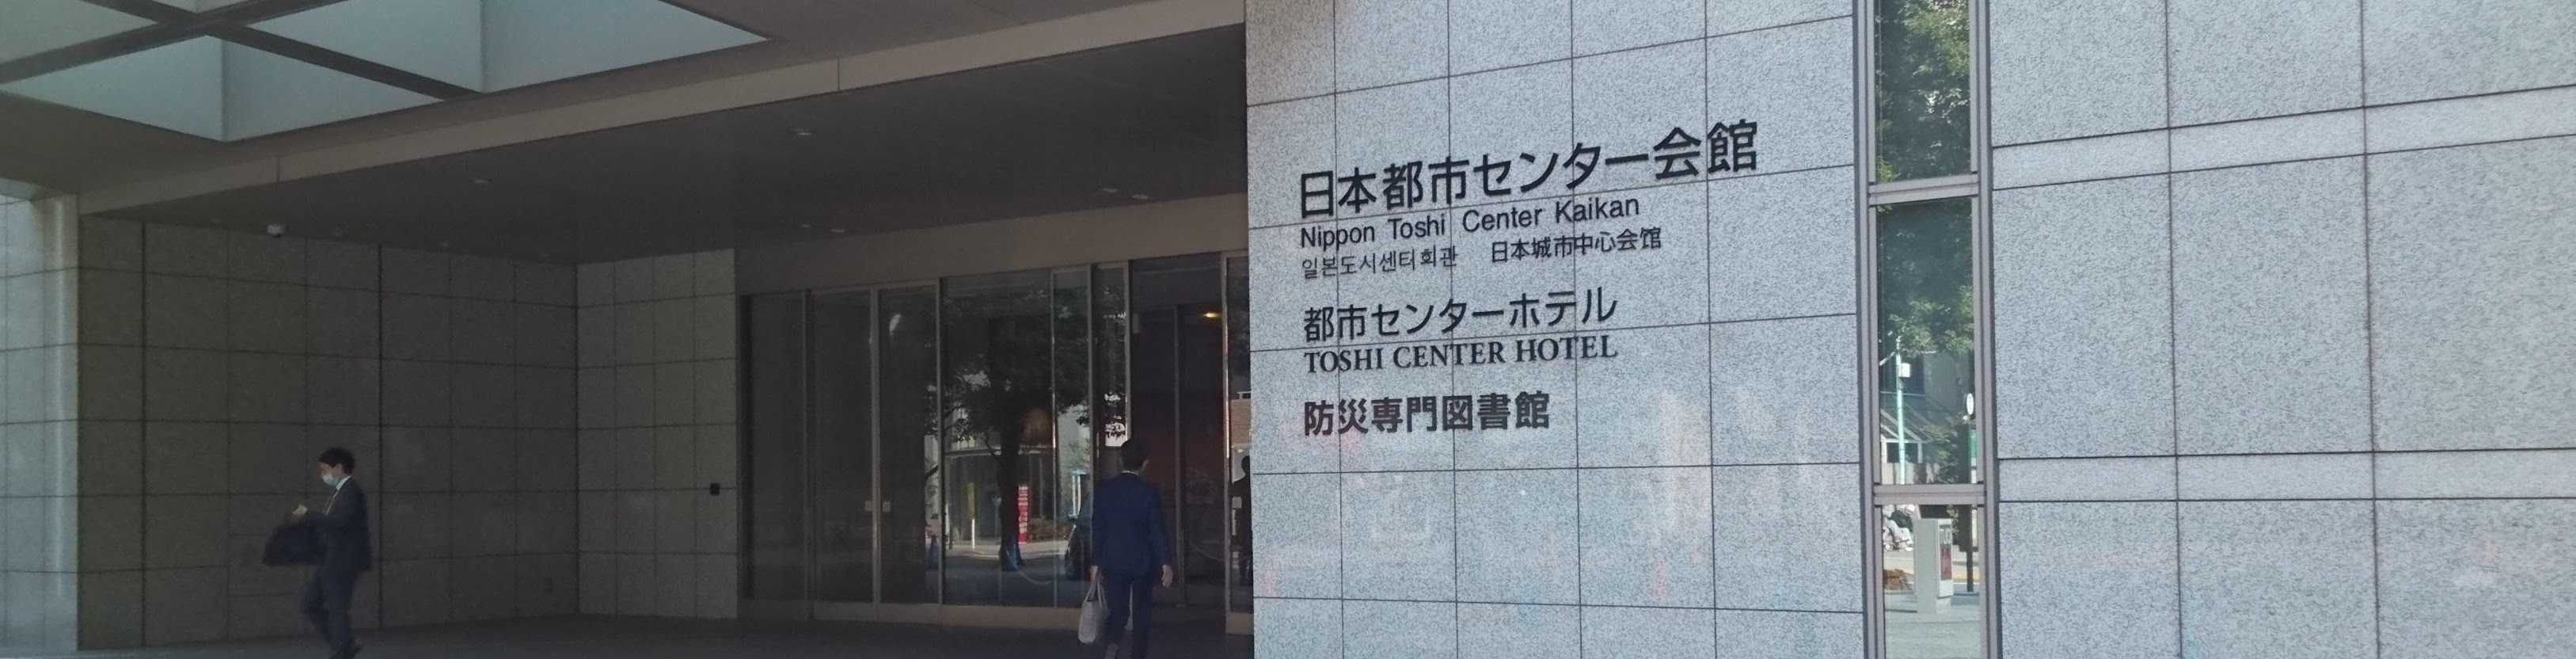 防災専門図書館が入っている日本都市センター会館外観